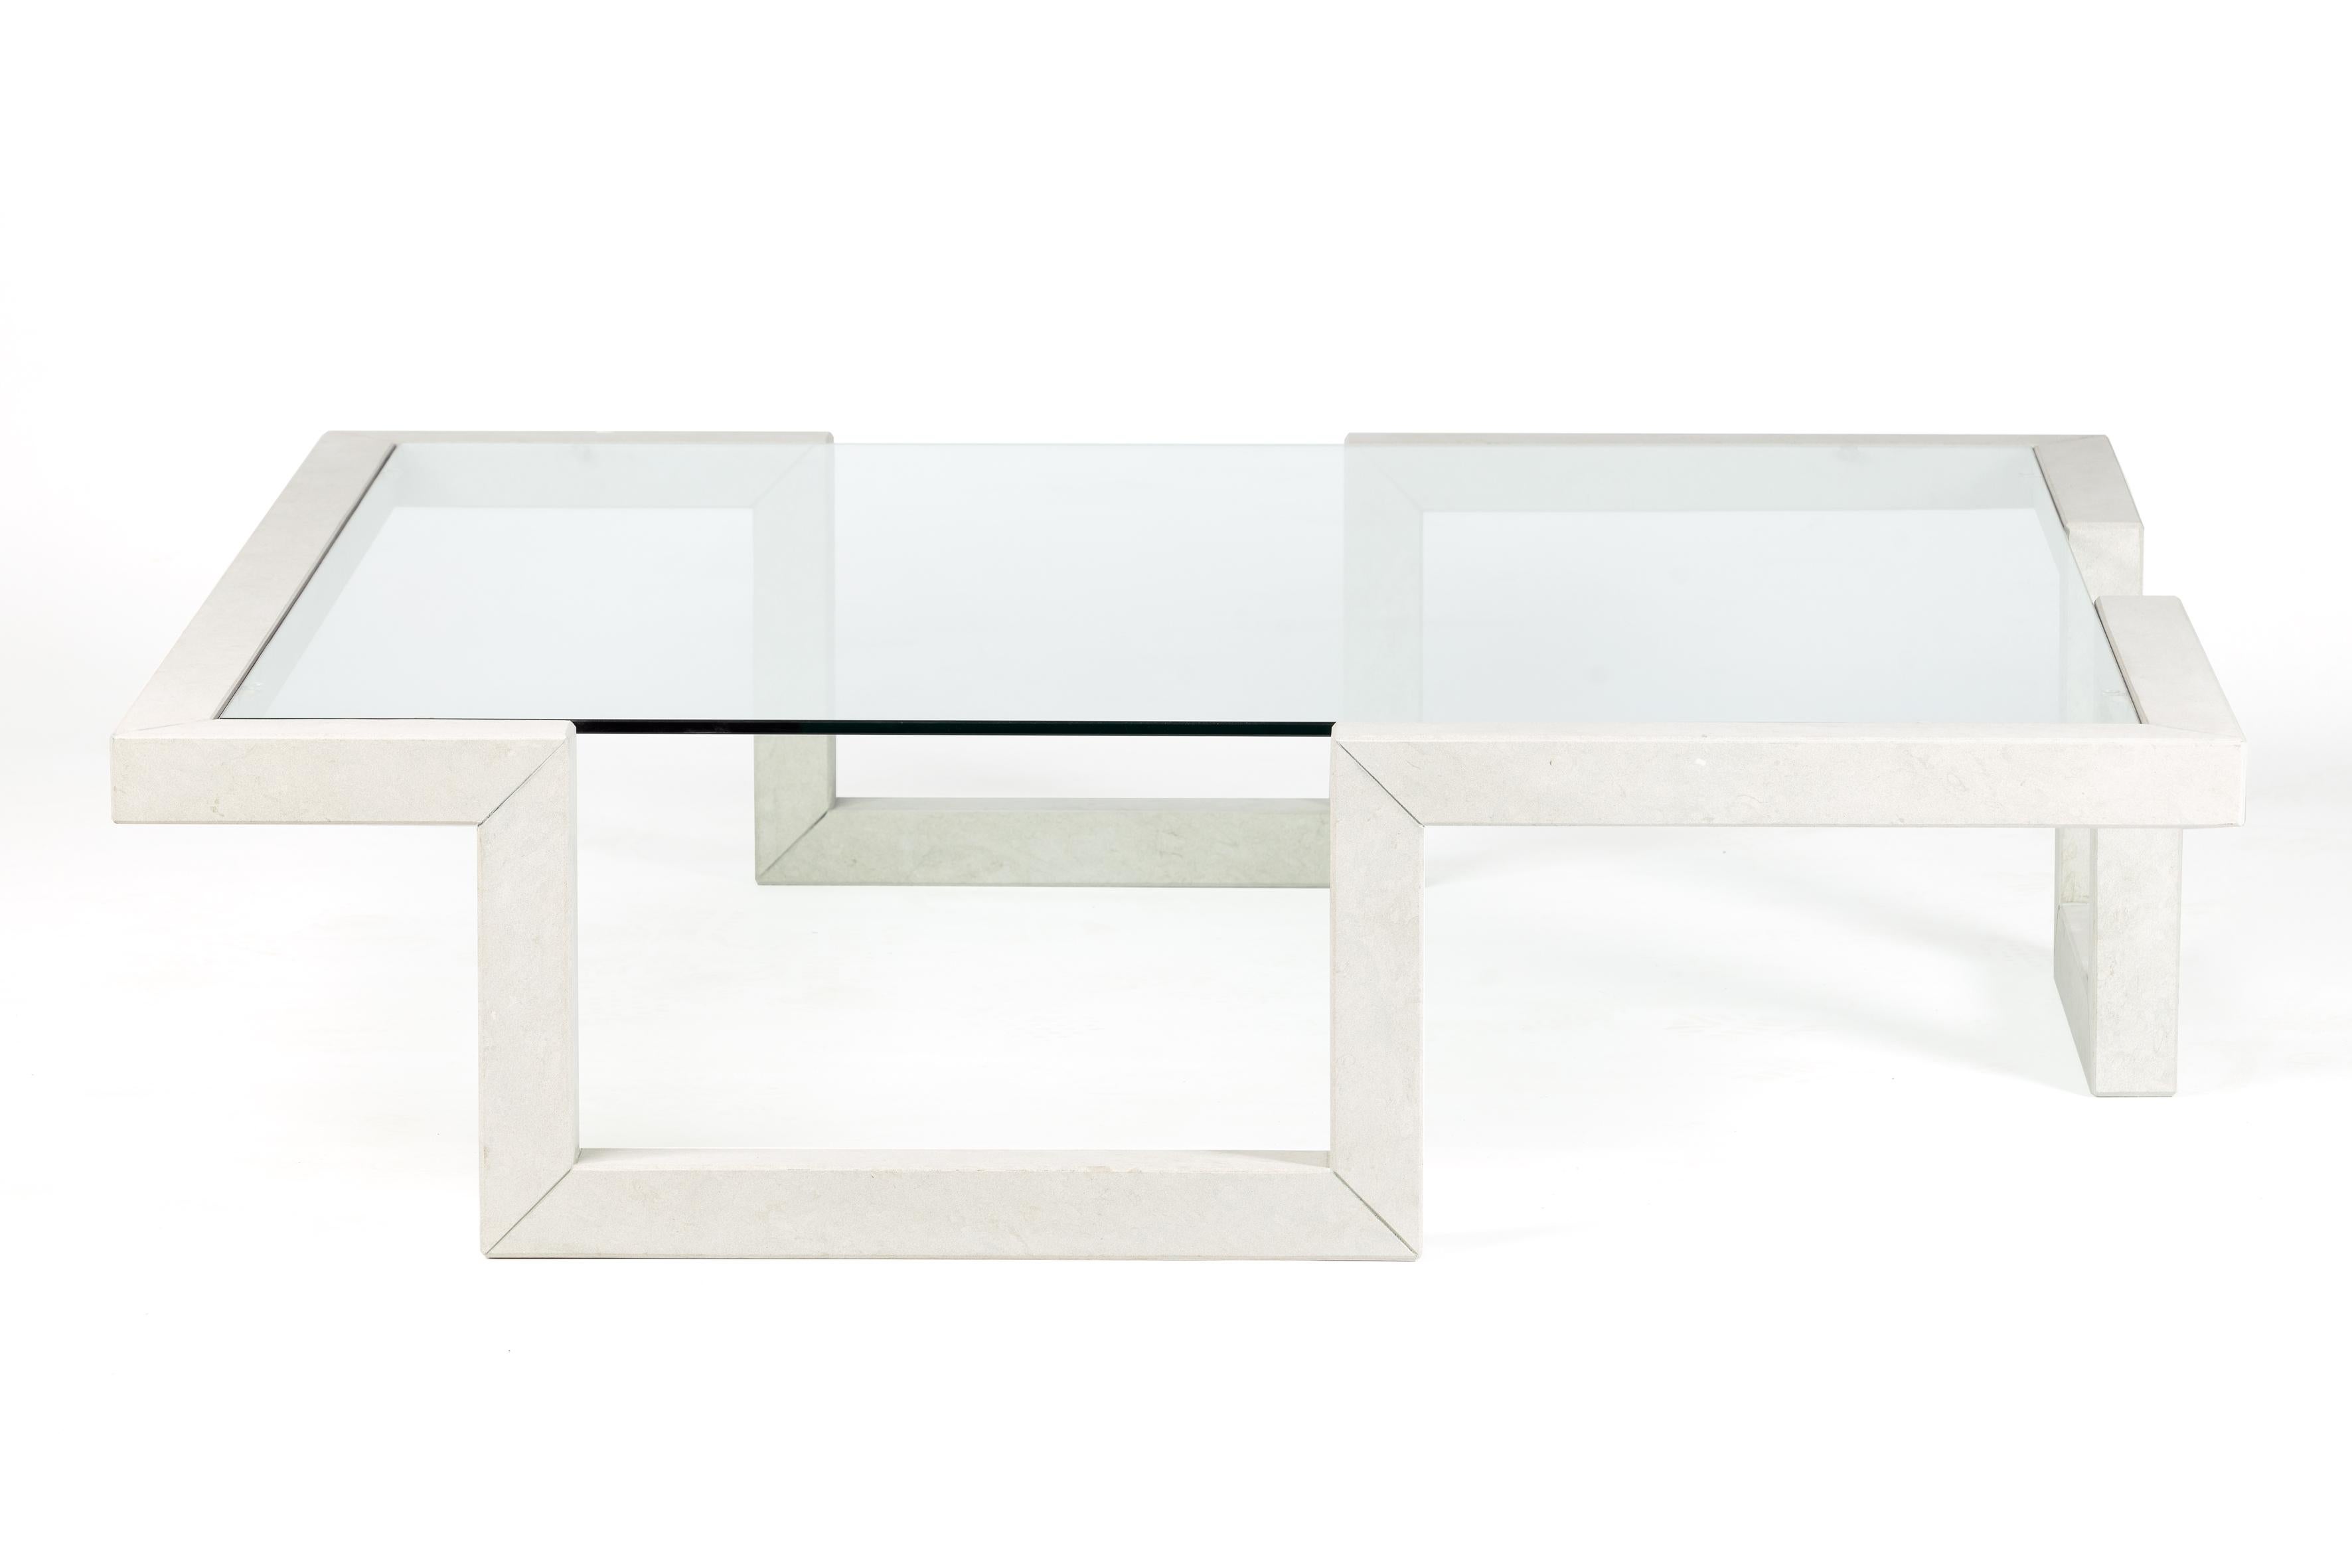 Castile est une table basse en marbre au design linéaire et parfaitement proportionné. Il se compose d'une fine structure de marbre de Bateig, une pierre naturelle d'origine espagnole, qui traverse l'espace en réalisant des formes carrées. La table